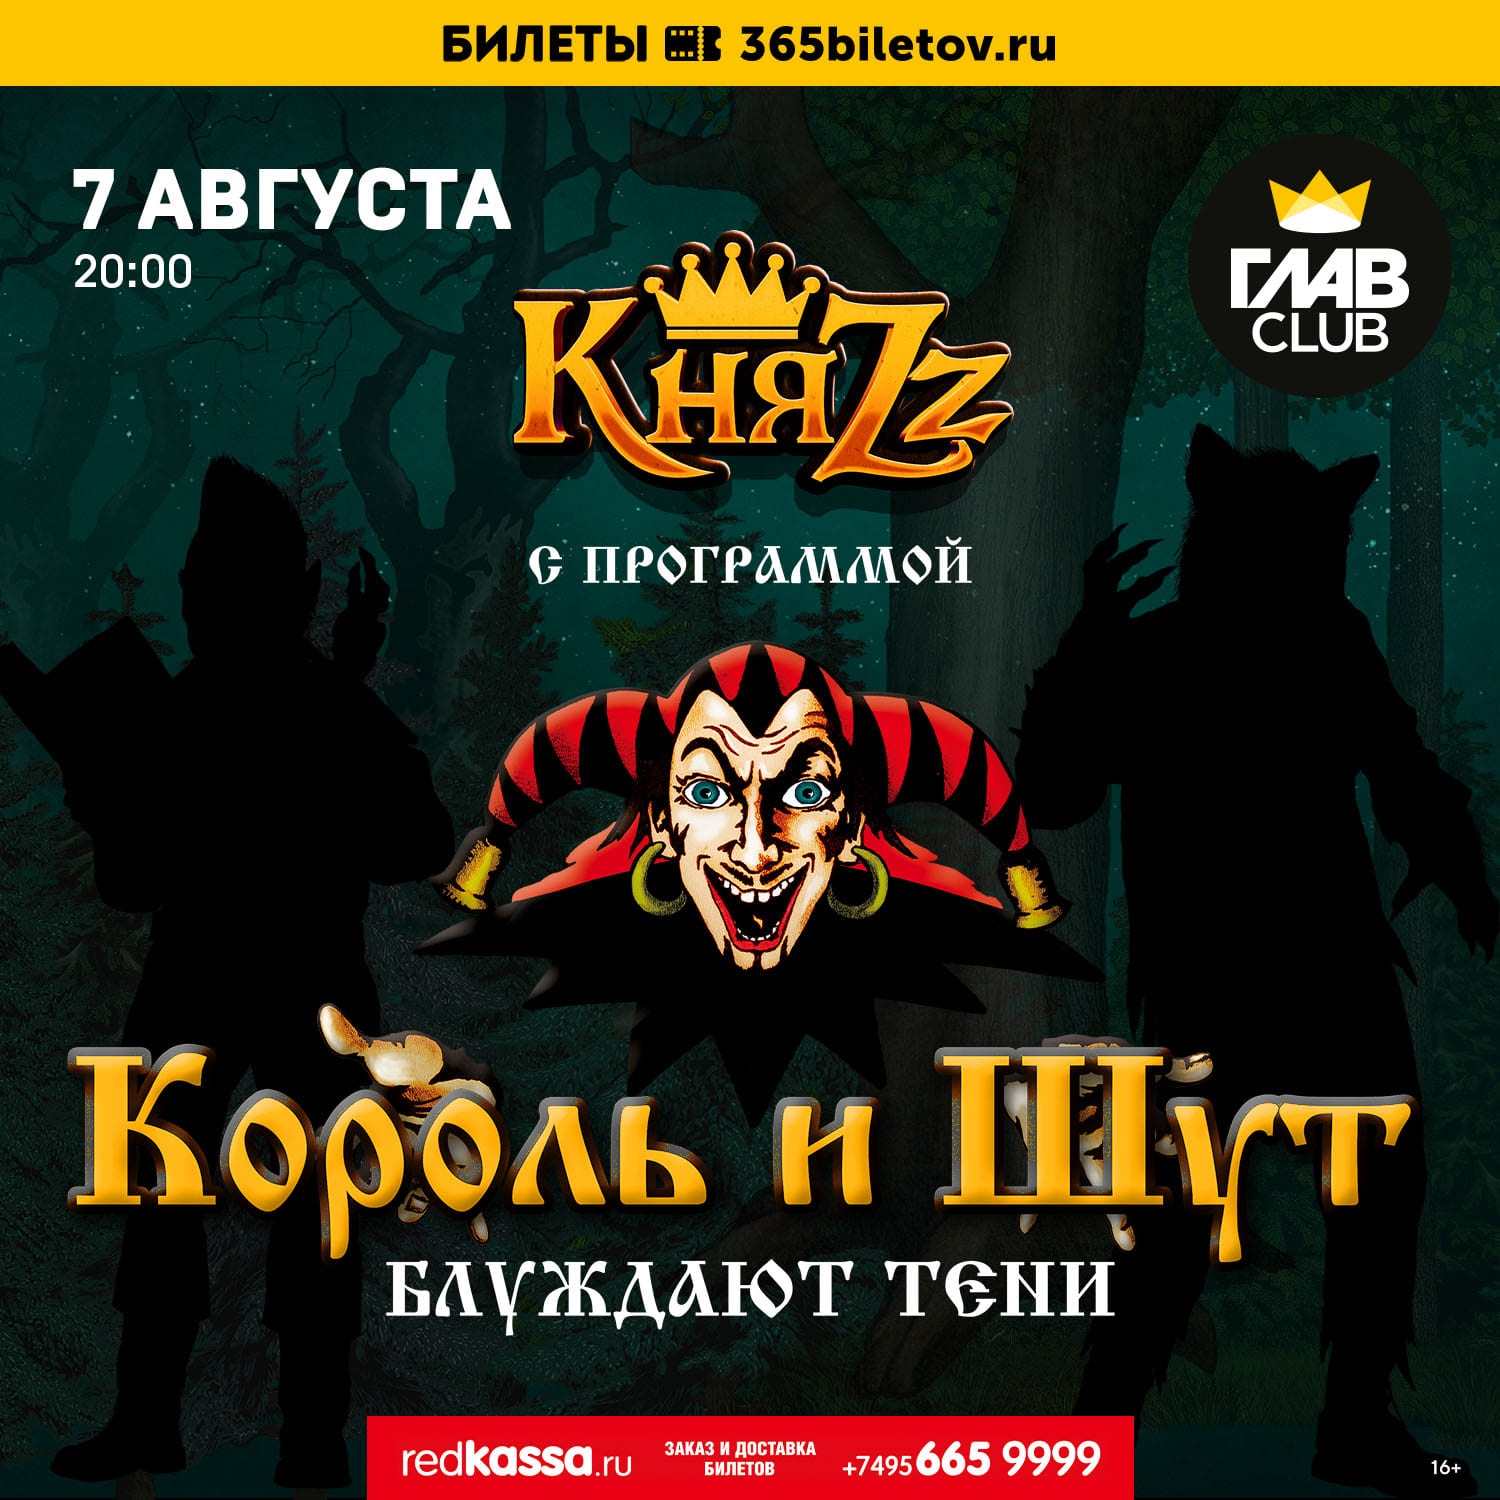 Группа КняZz помянула Михаила Горшенёва концертом в его День рождения